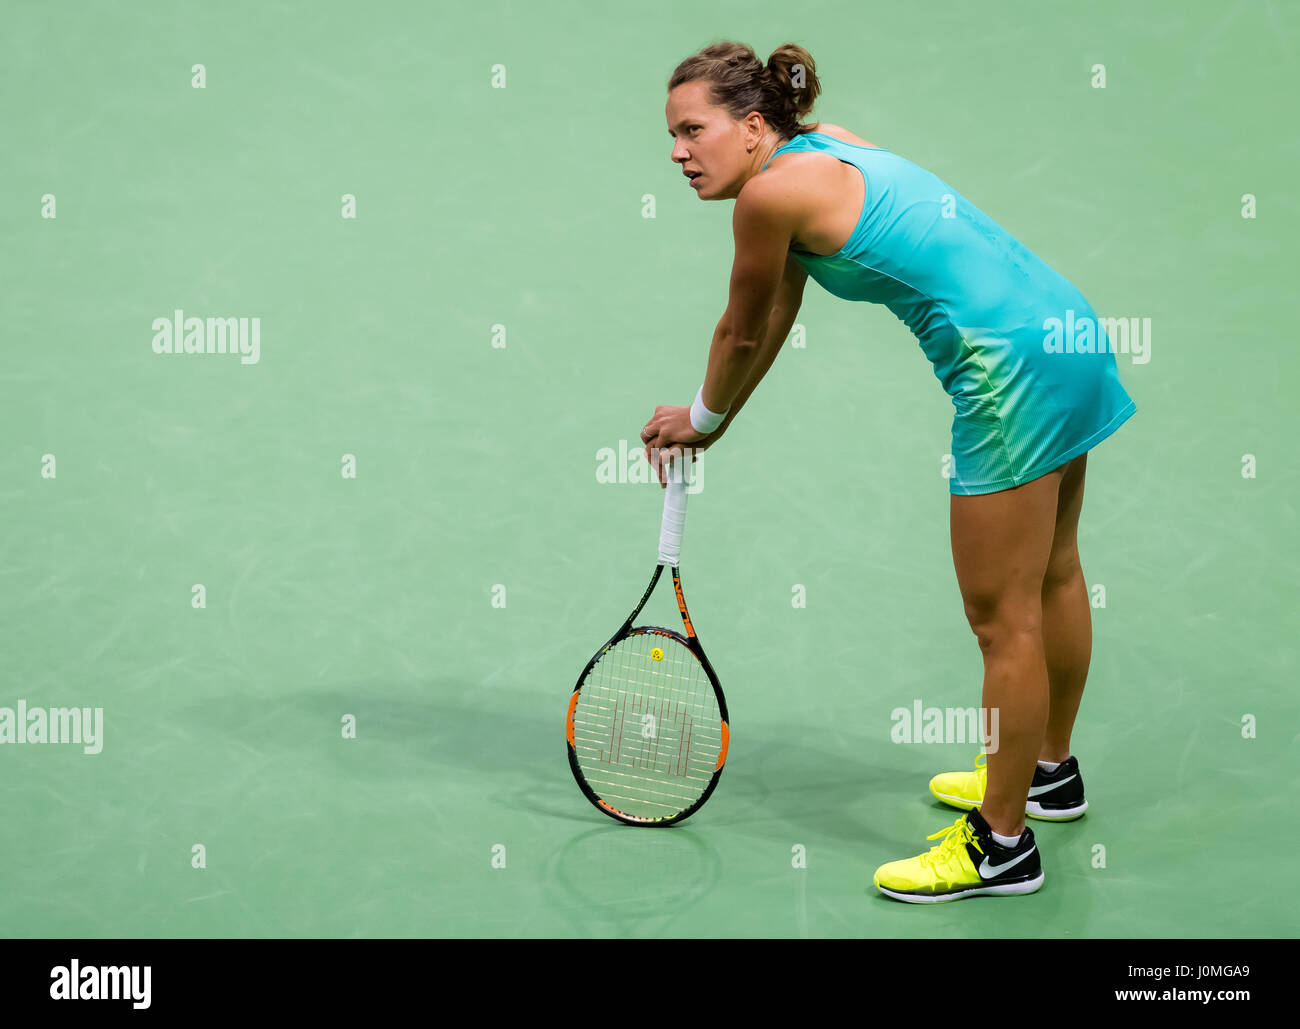 BIEL, Svizzera - 13 aprile : Barbora STRYCOVA in azione al 2017 Ladies Open Biel WTA torneo internazionale di tennis Foto Stock